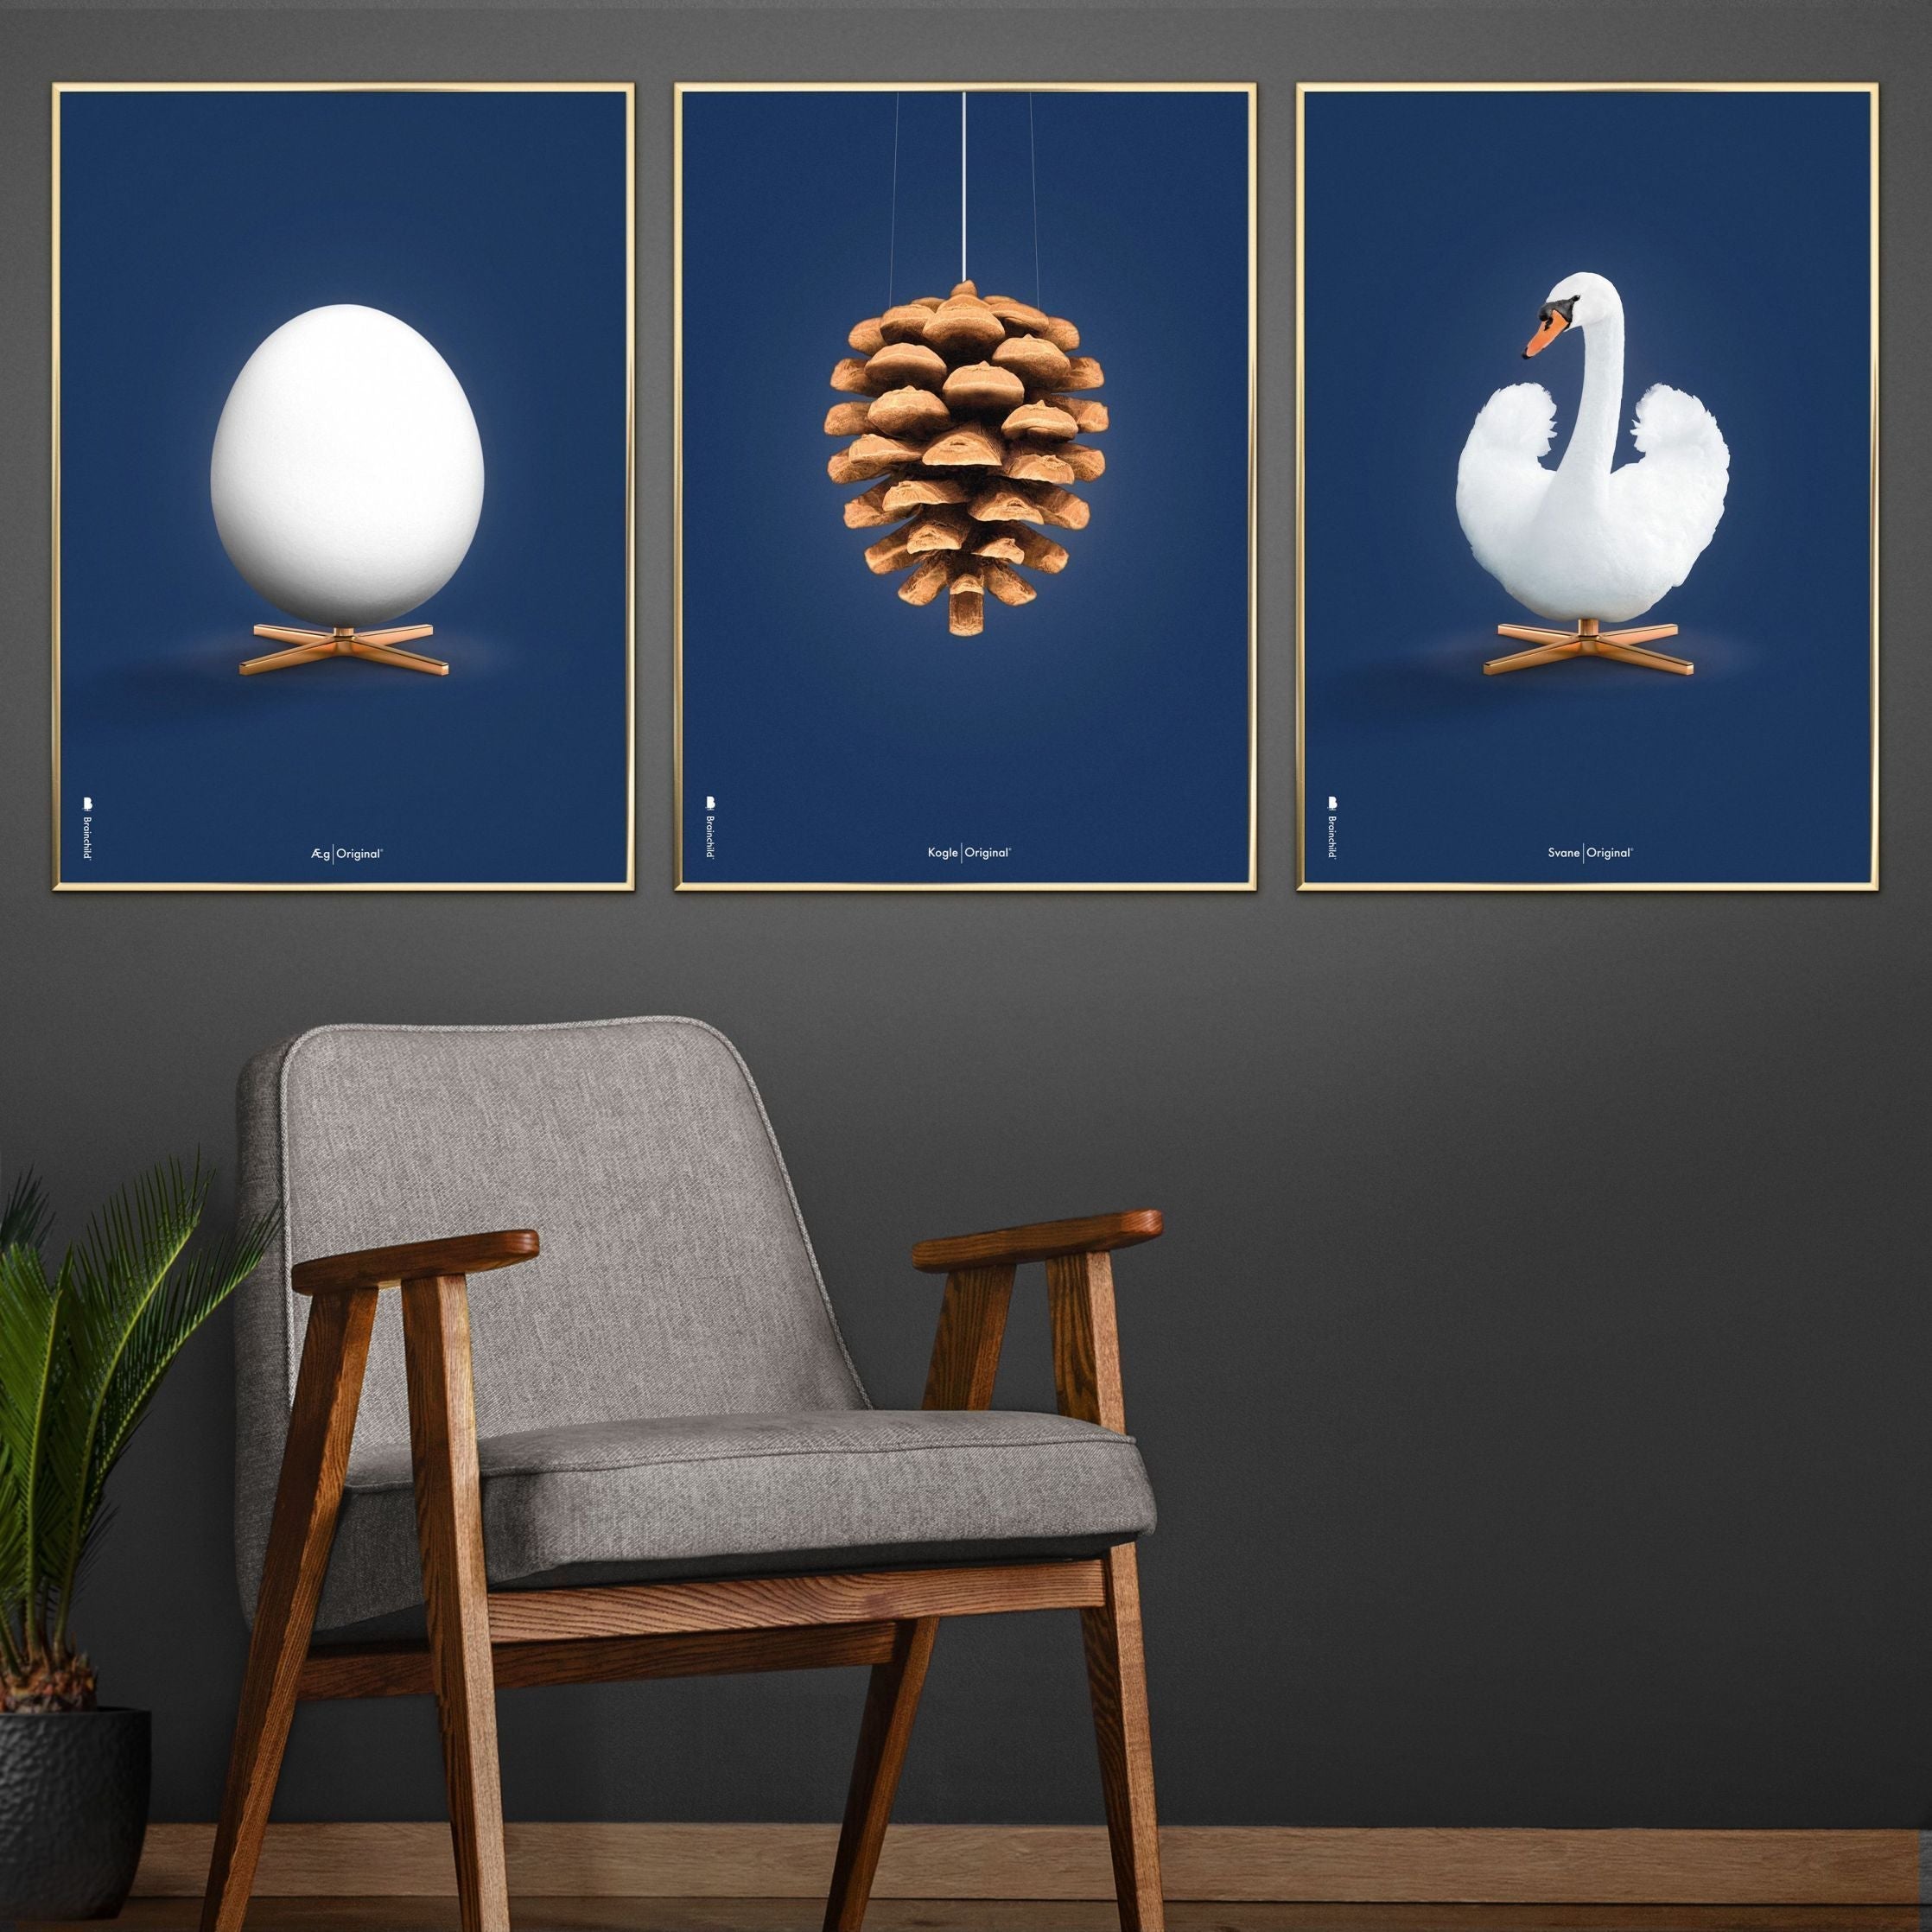 Pomysły Swan Classic Plakat, Free Wood Frame A5, ciemnoniebieskie tło